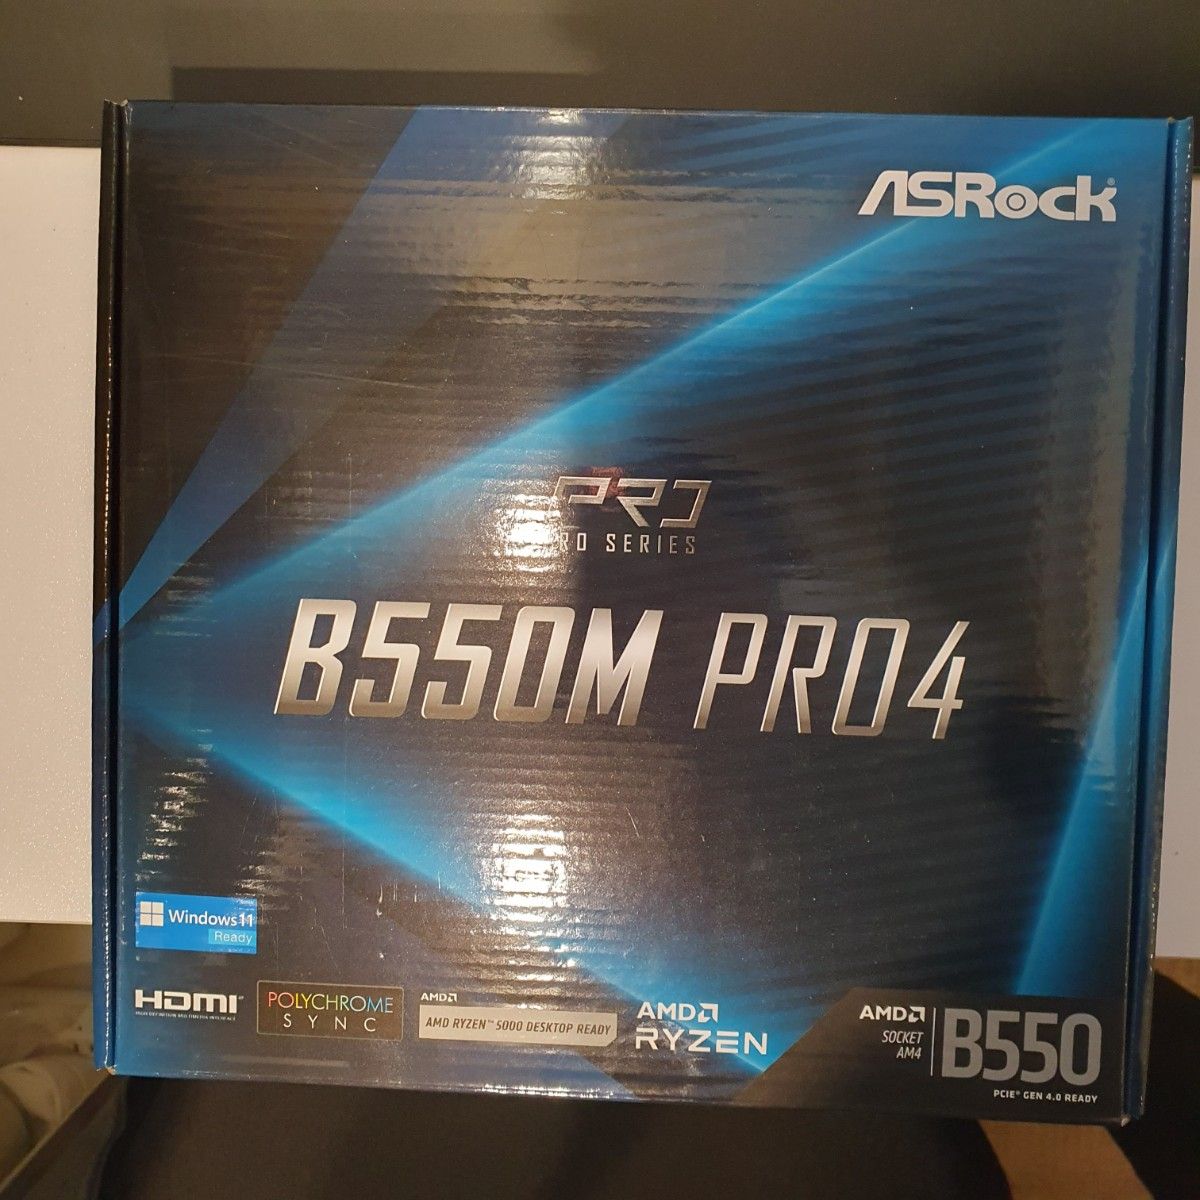 ASRock B550m pro4 AMD マザーボード 